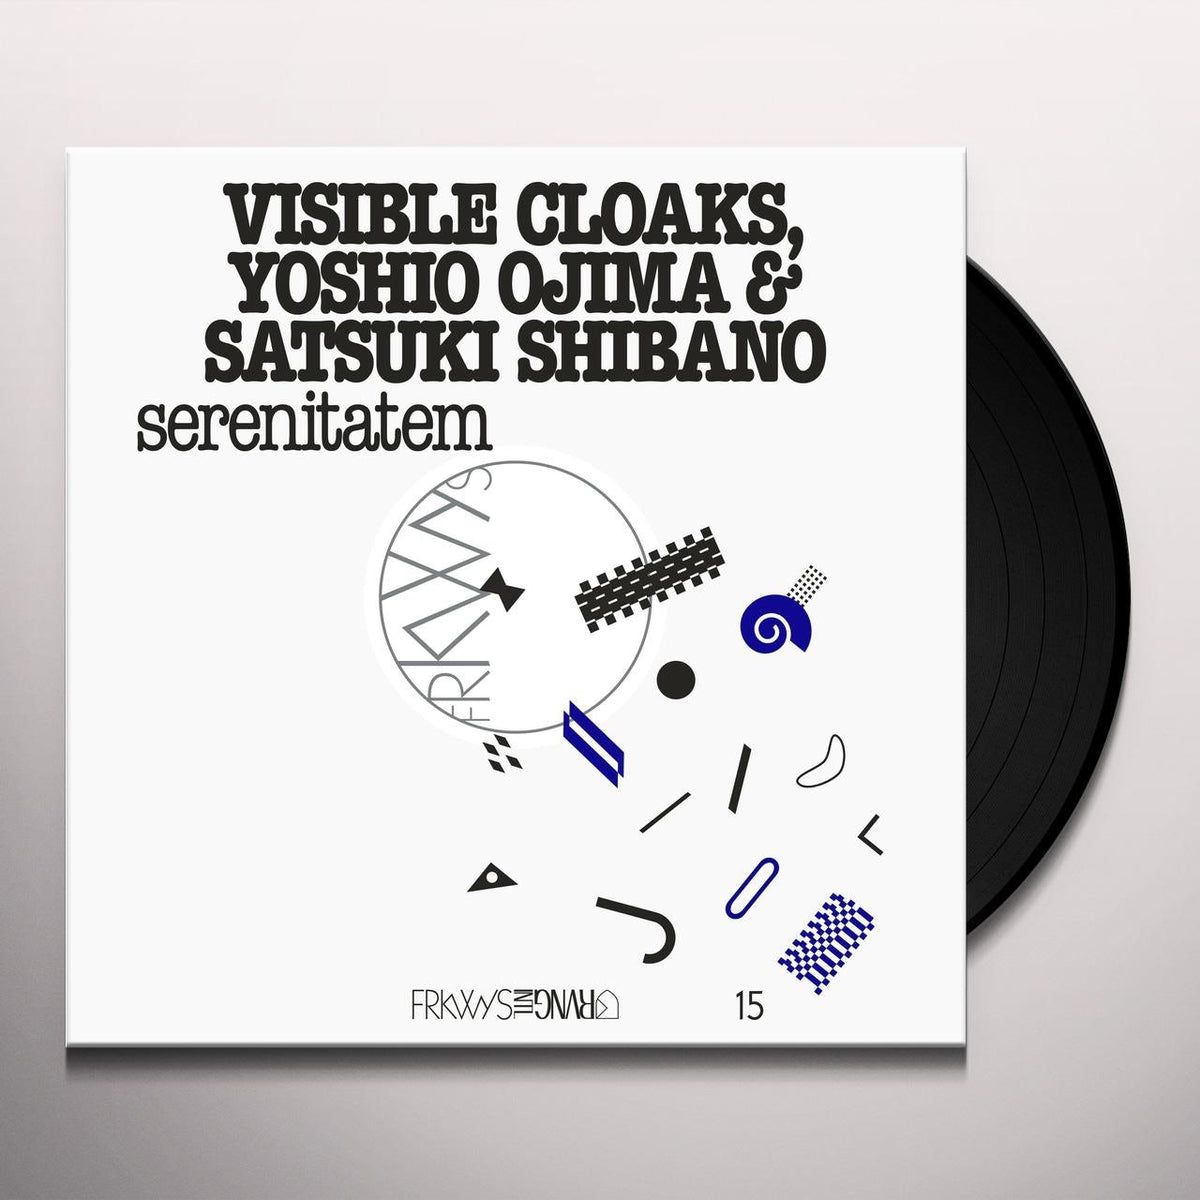 Visible Cloaks, Yoshio Ojima & Satsuki Shibano - Serenitatem LP